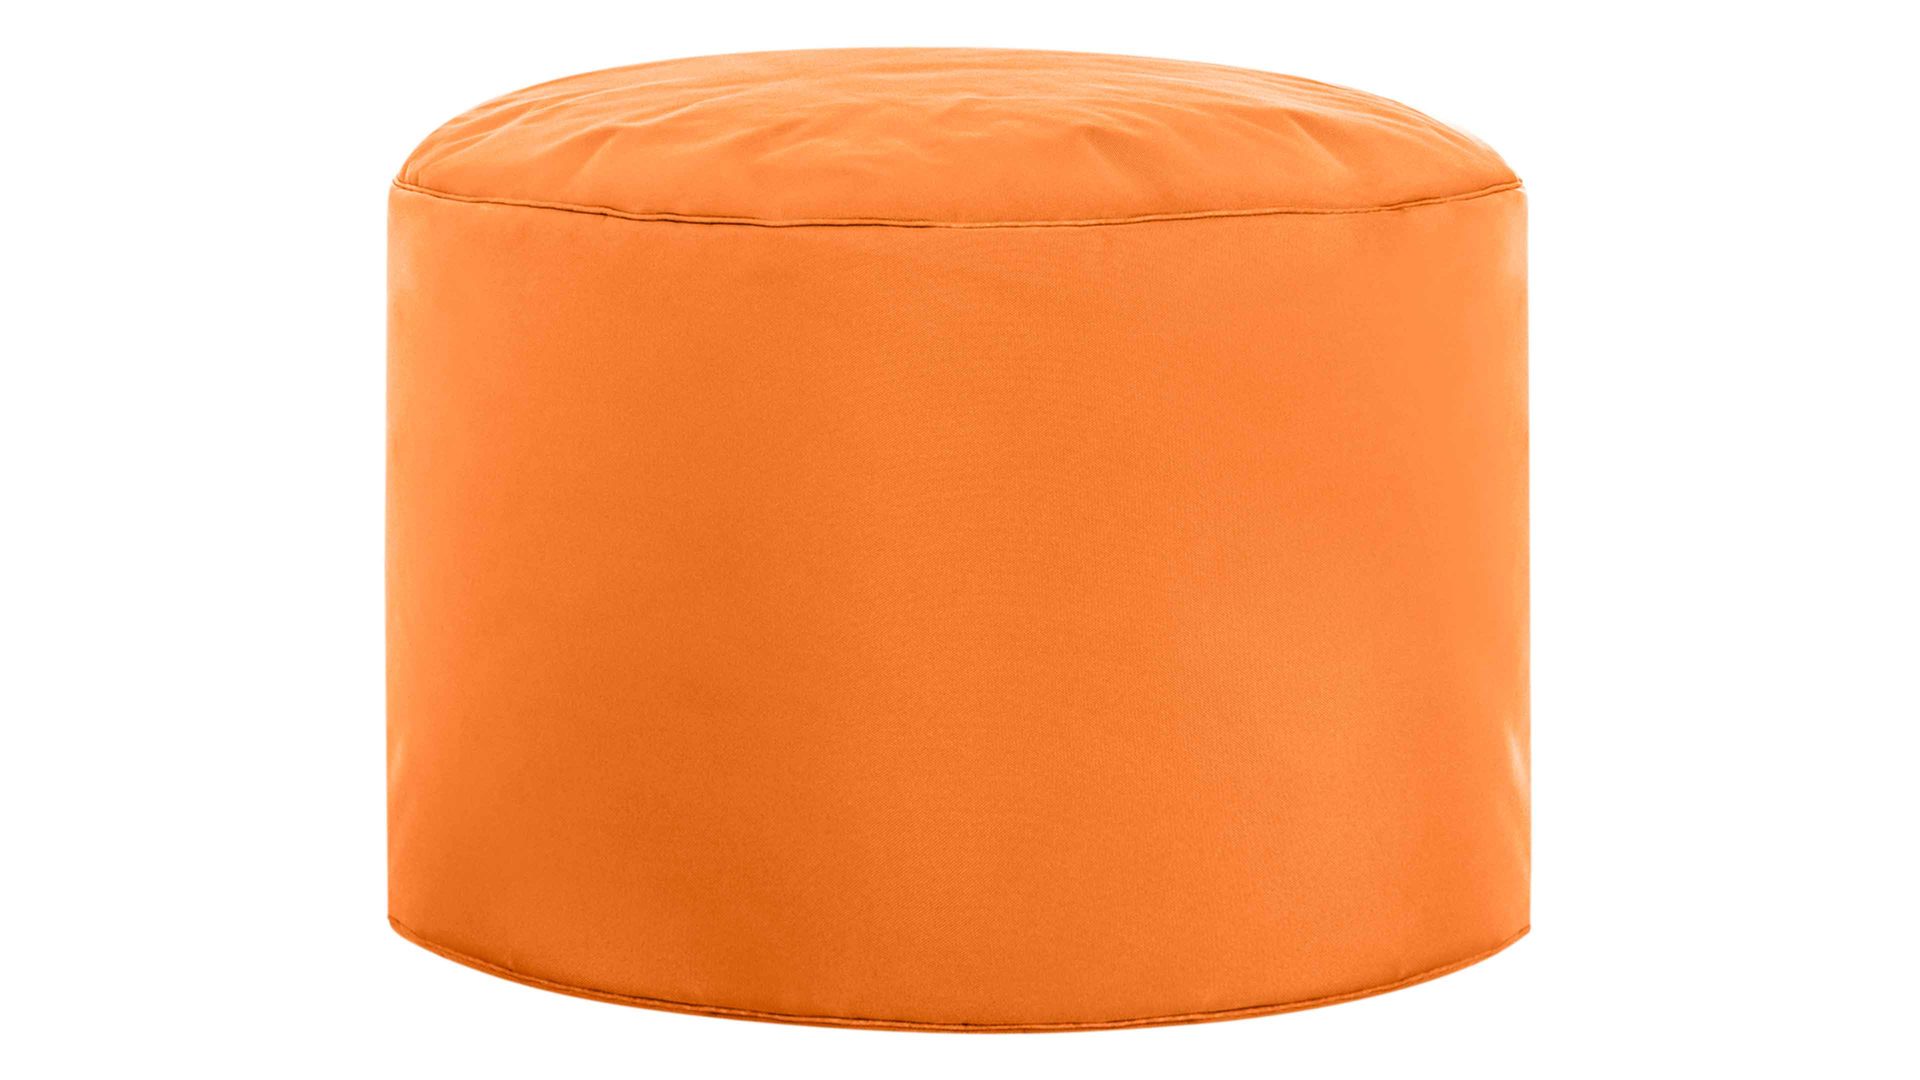 Sitzsack-Hocker Magma sitting point aus Kunstfaser in Orange SITTING POINT Sitzsack-Hocker dotcom scuba® als Kleinmöbel orange Kunstfaser – Durchmesser ca. 50 cm